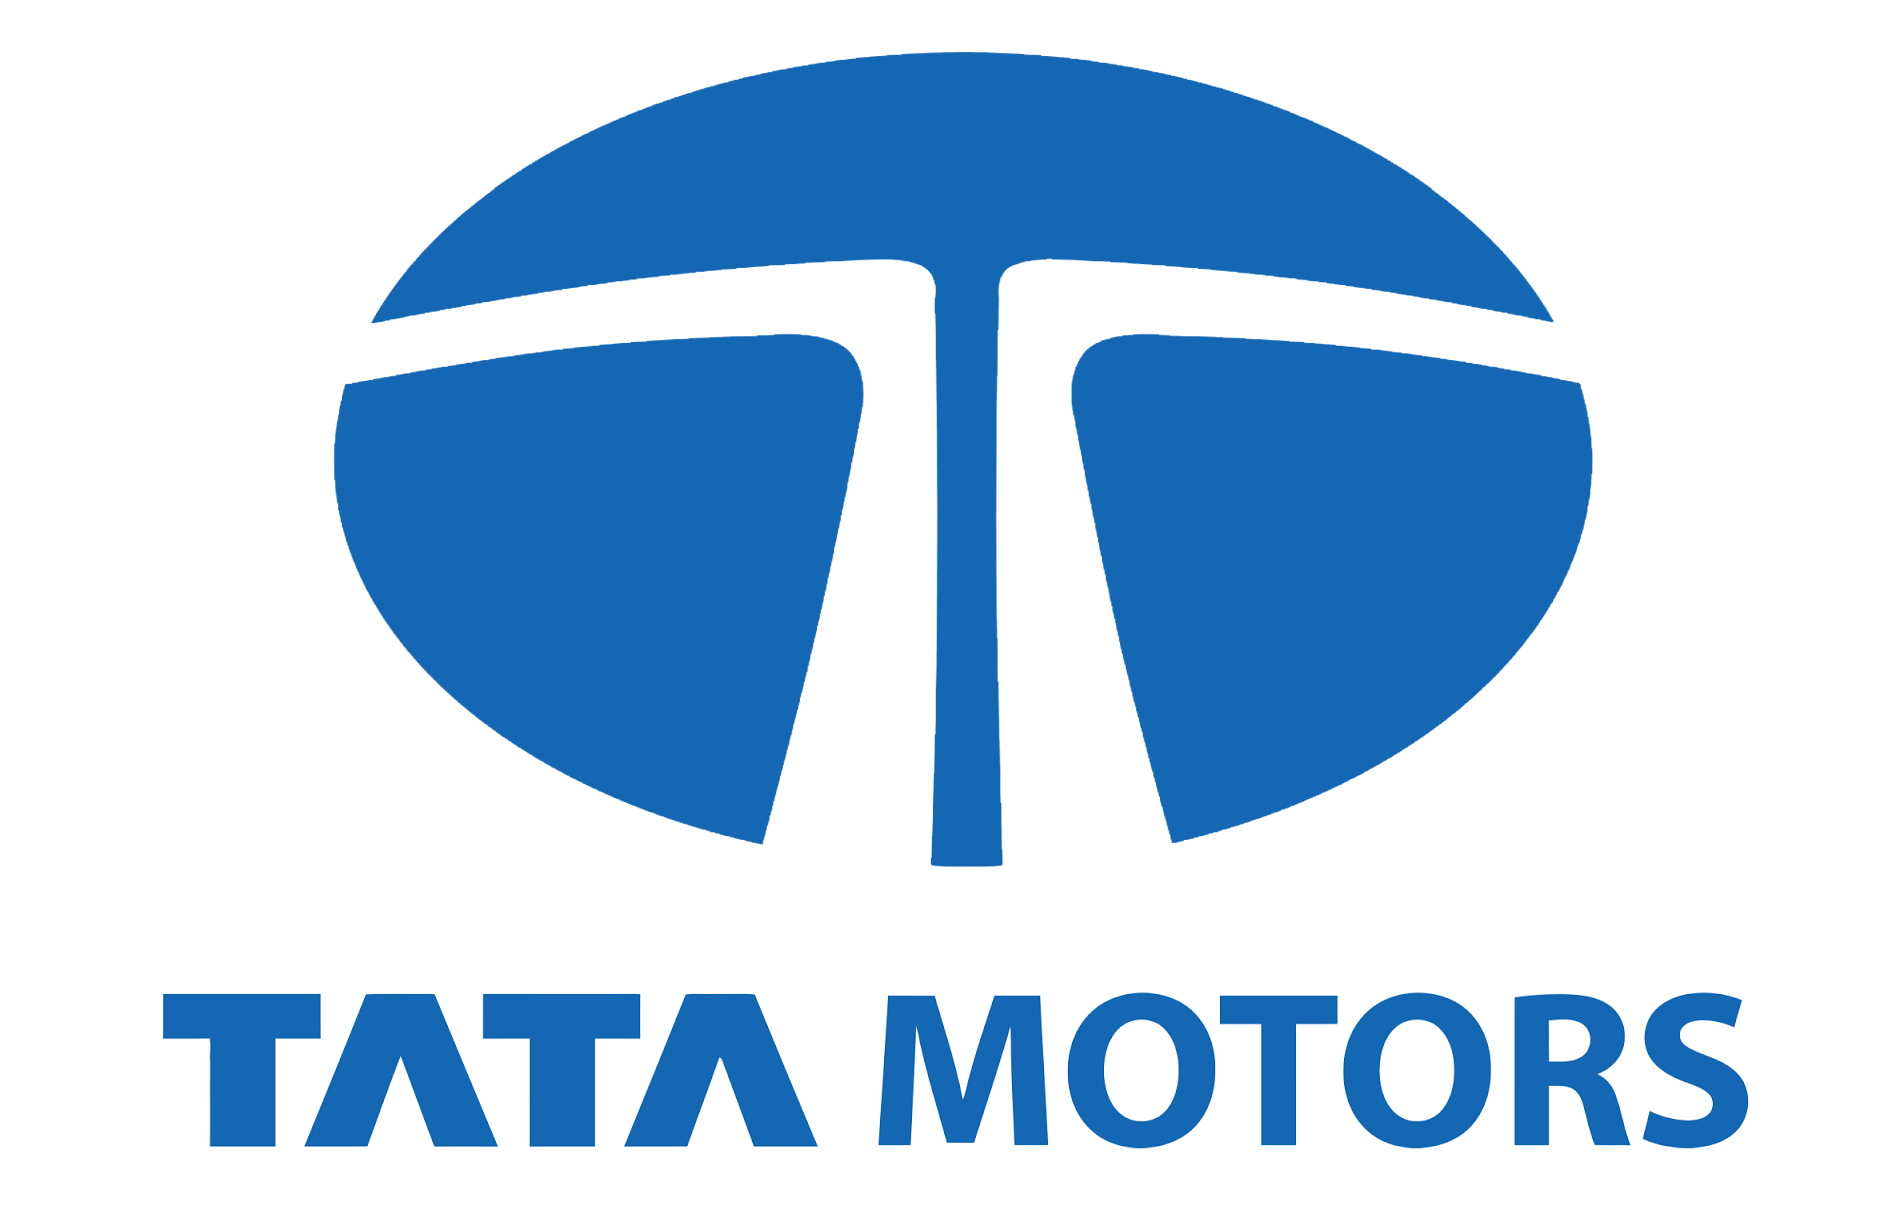 Tata Motors Cars Showroom - R.A. Motors, Aliganj|Show Room|Automotive